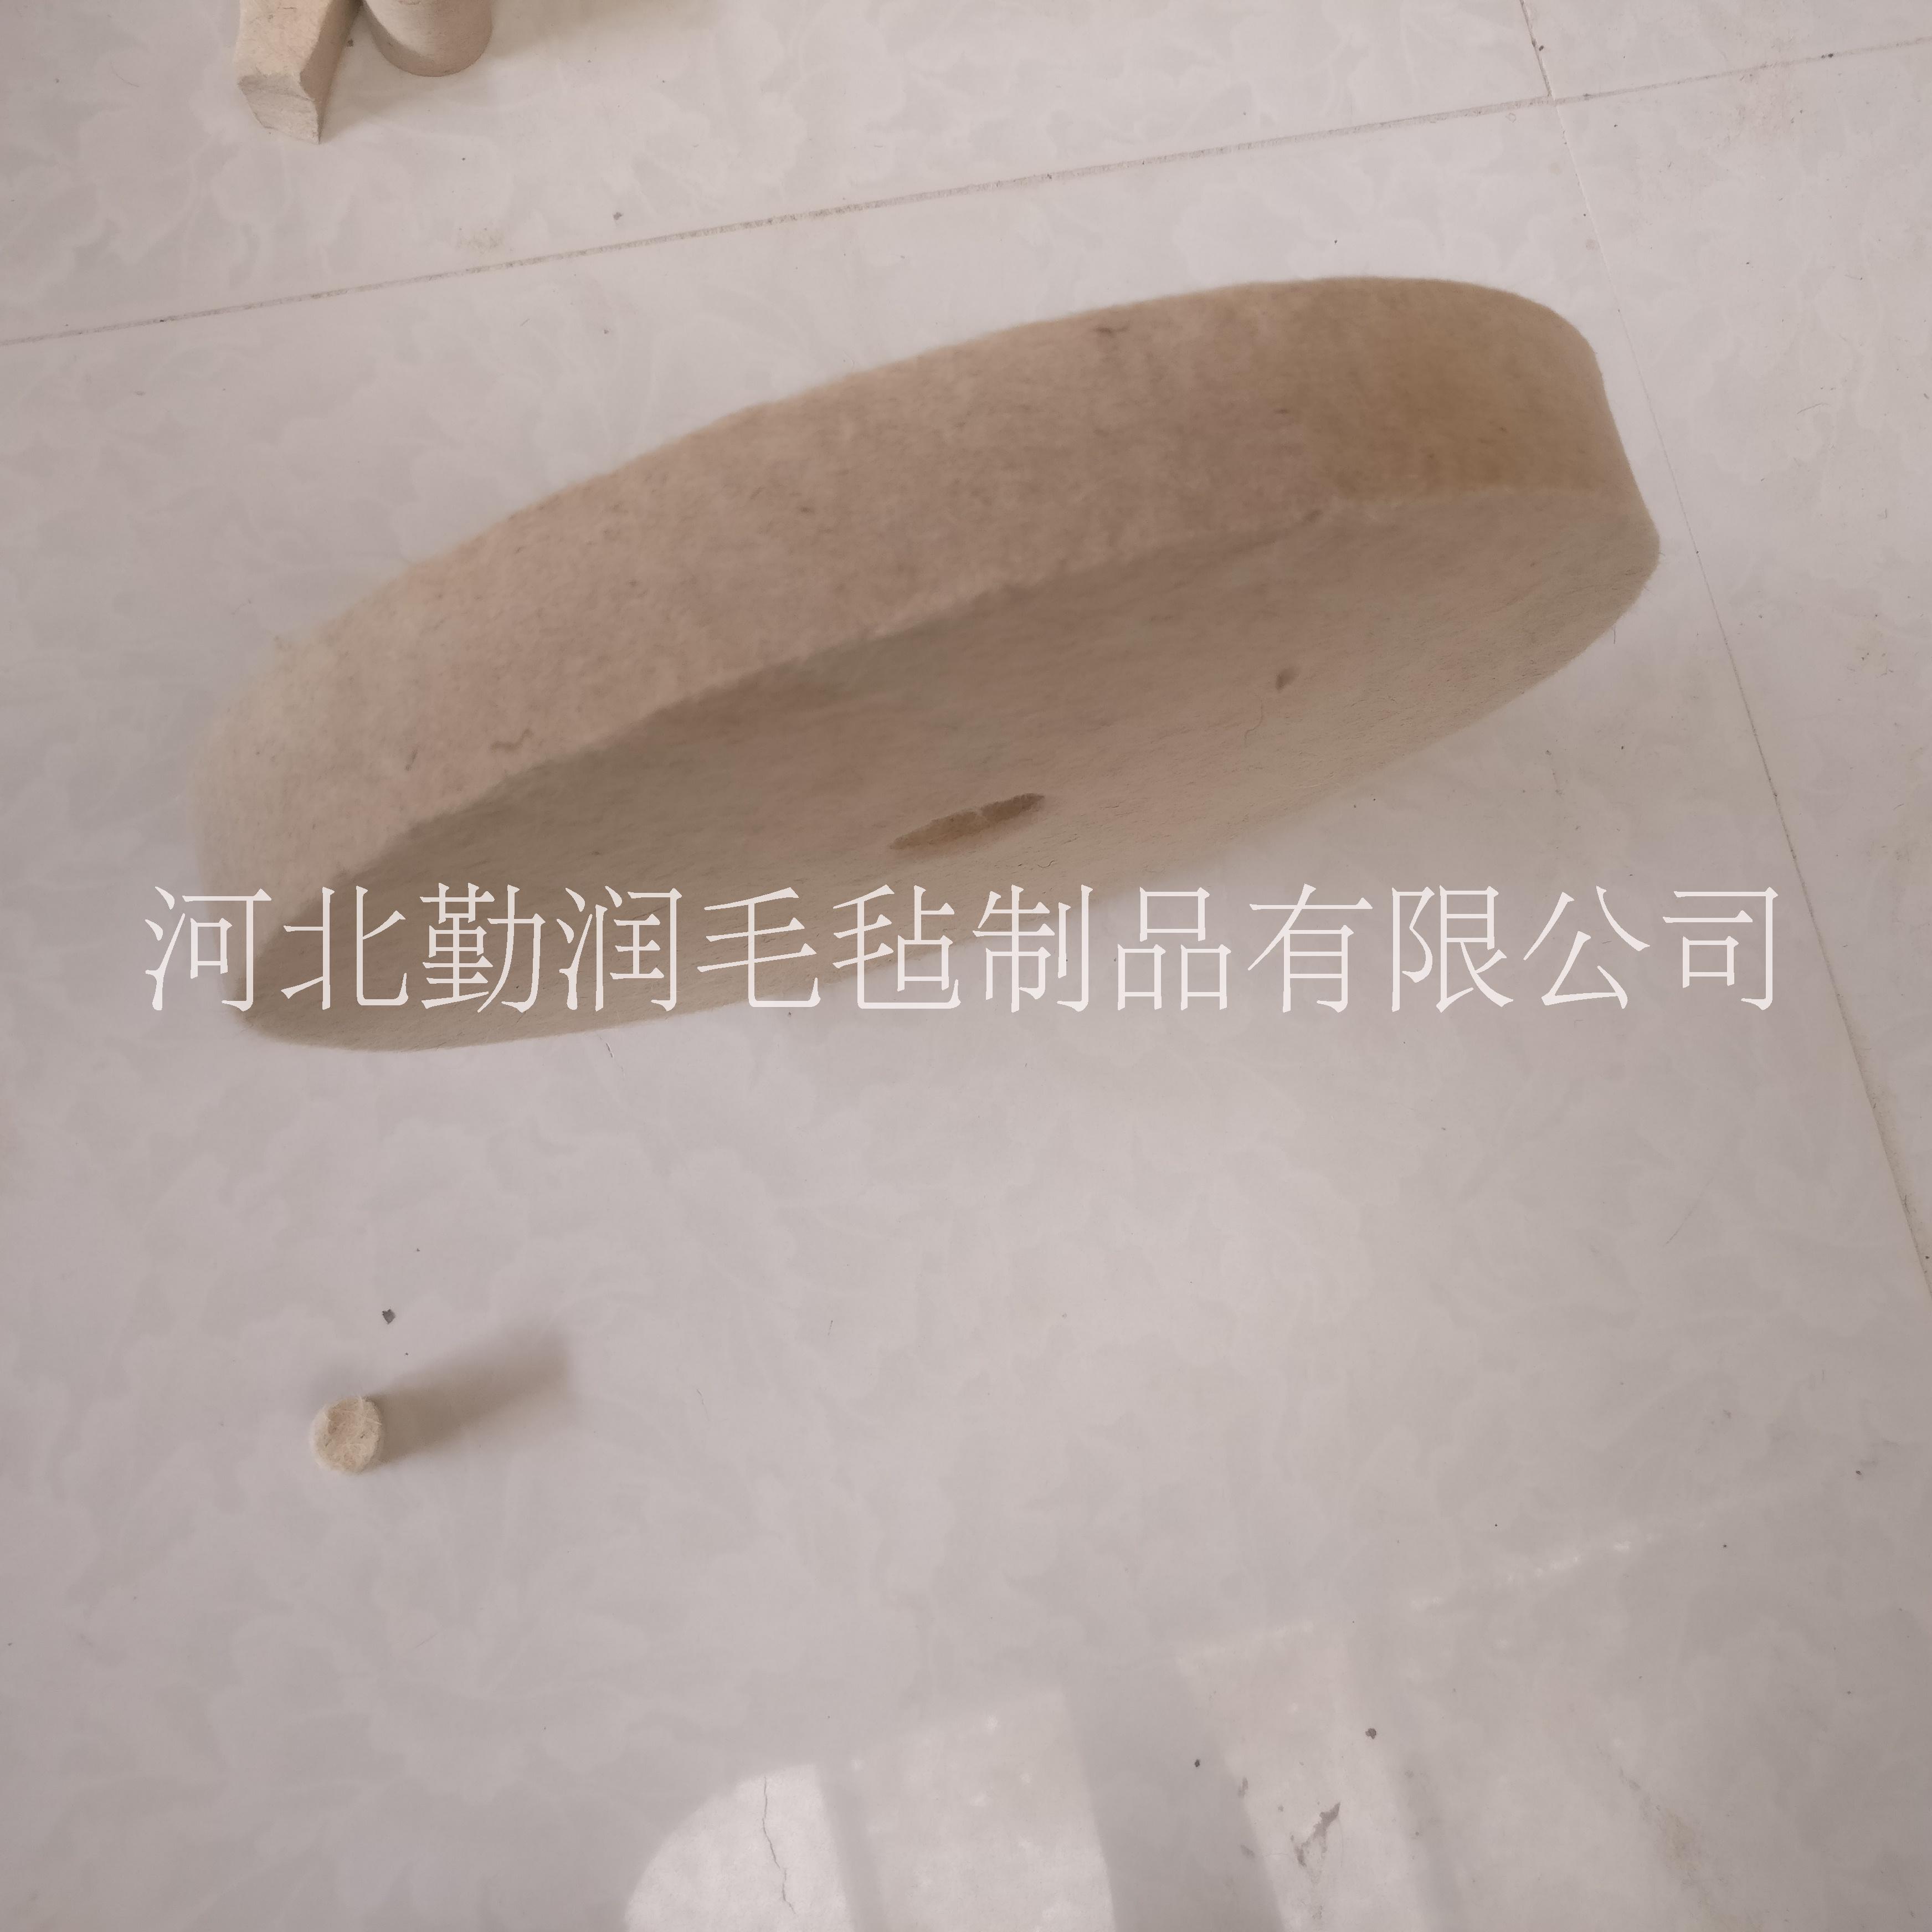 杭州勤润毛毡厂专业生产抛光毛毡轮 耐磨羊毛轮定做 上海优质抛光盘定做 抛光轮